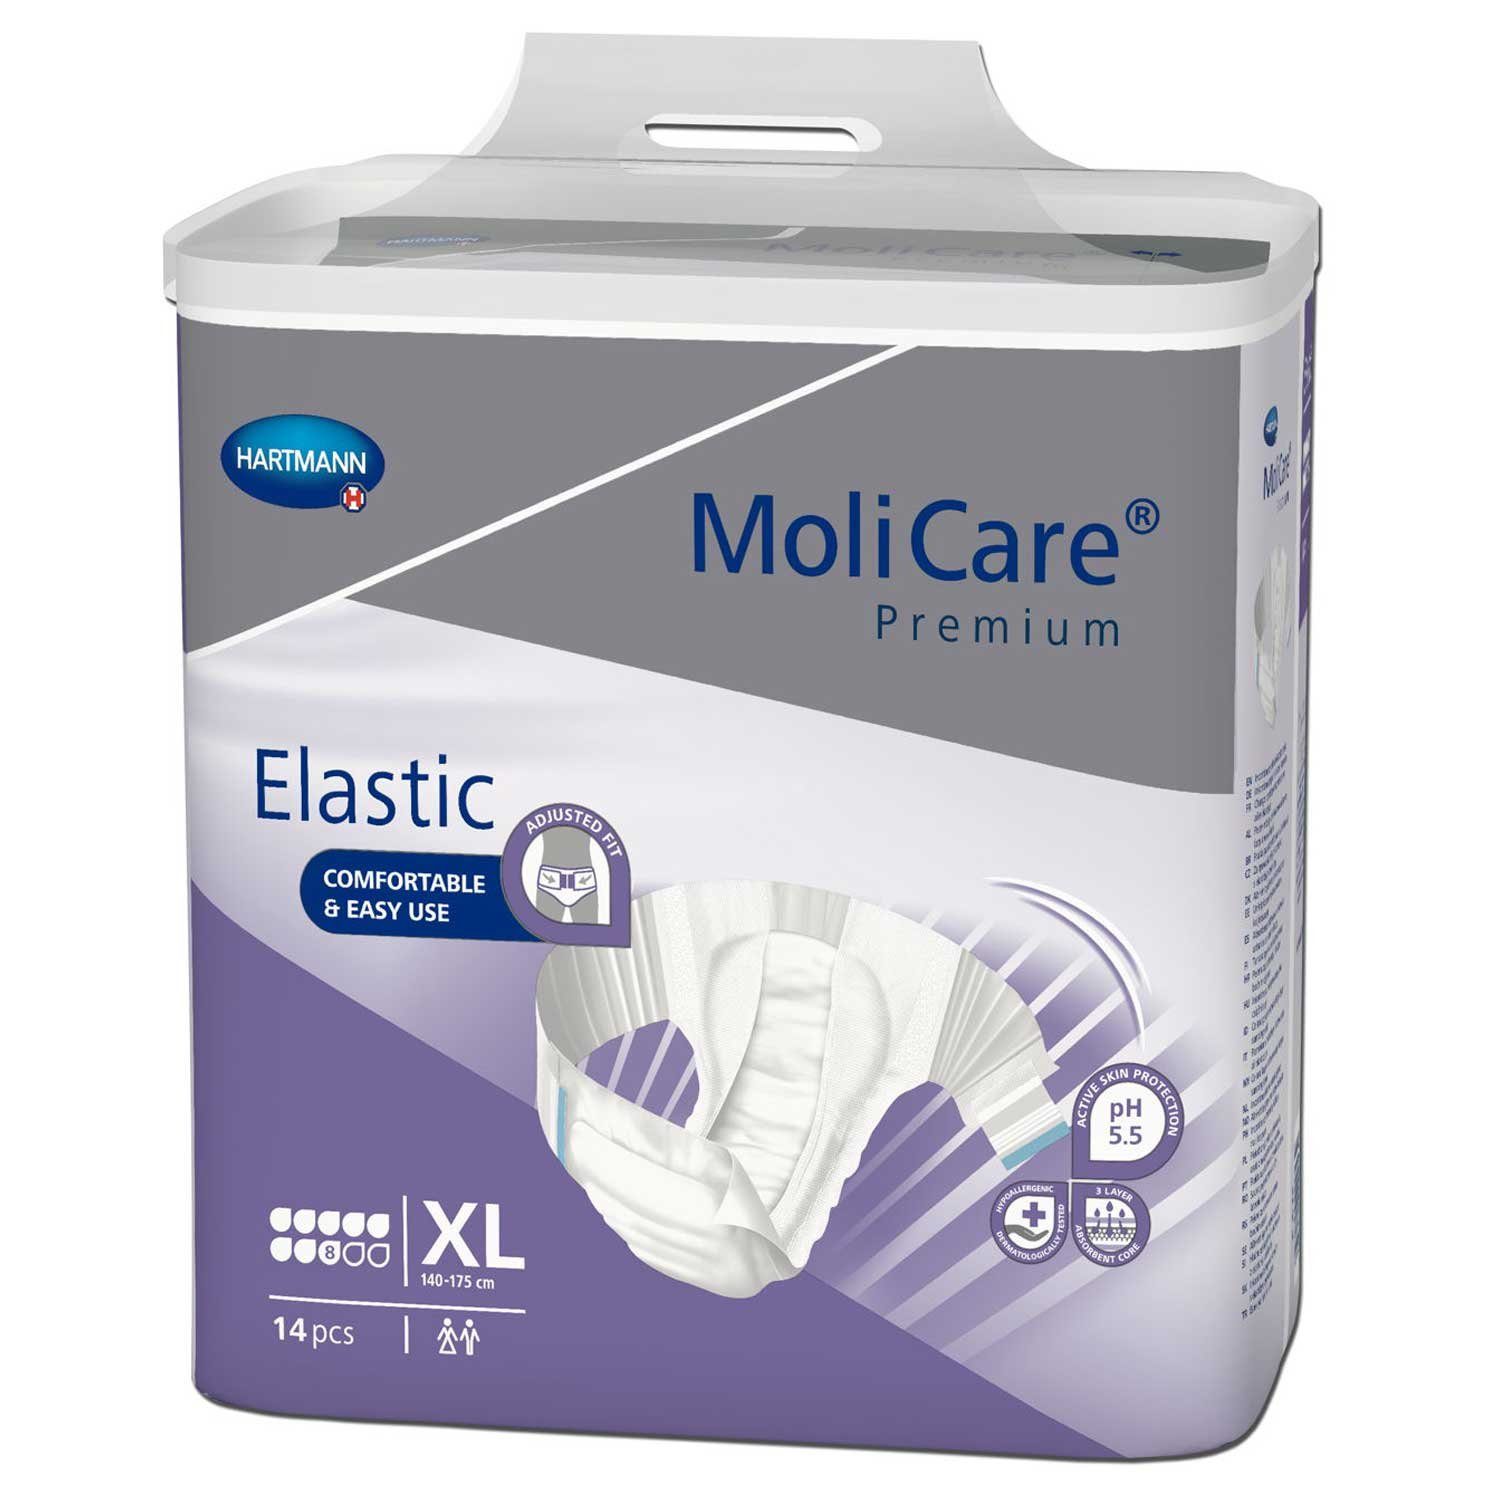 Molicare Inkontinenzslip MoliCare® Premium Elastic 8 Tropfen Größe XL Karton á 4 (56-St) für bequemlichkeit bei Inkontinenz